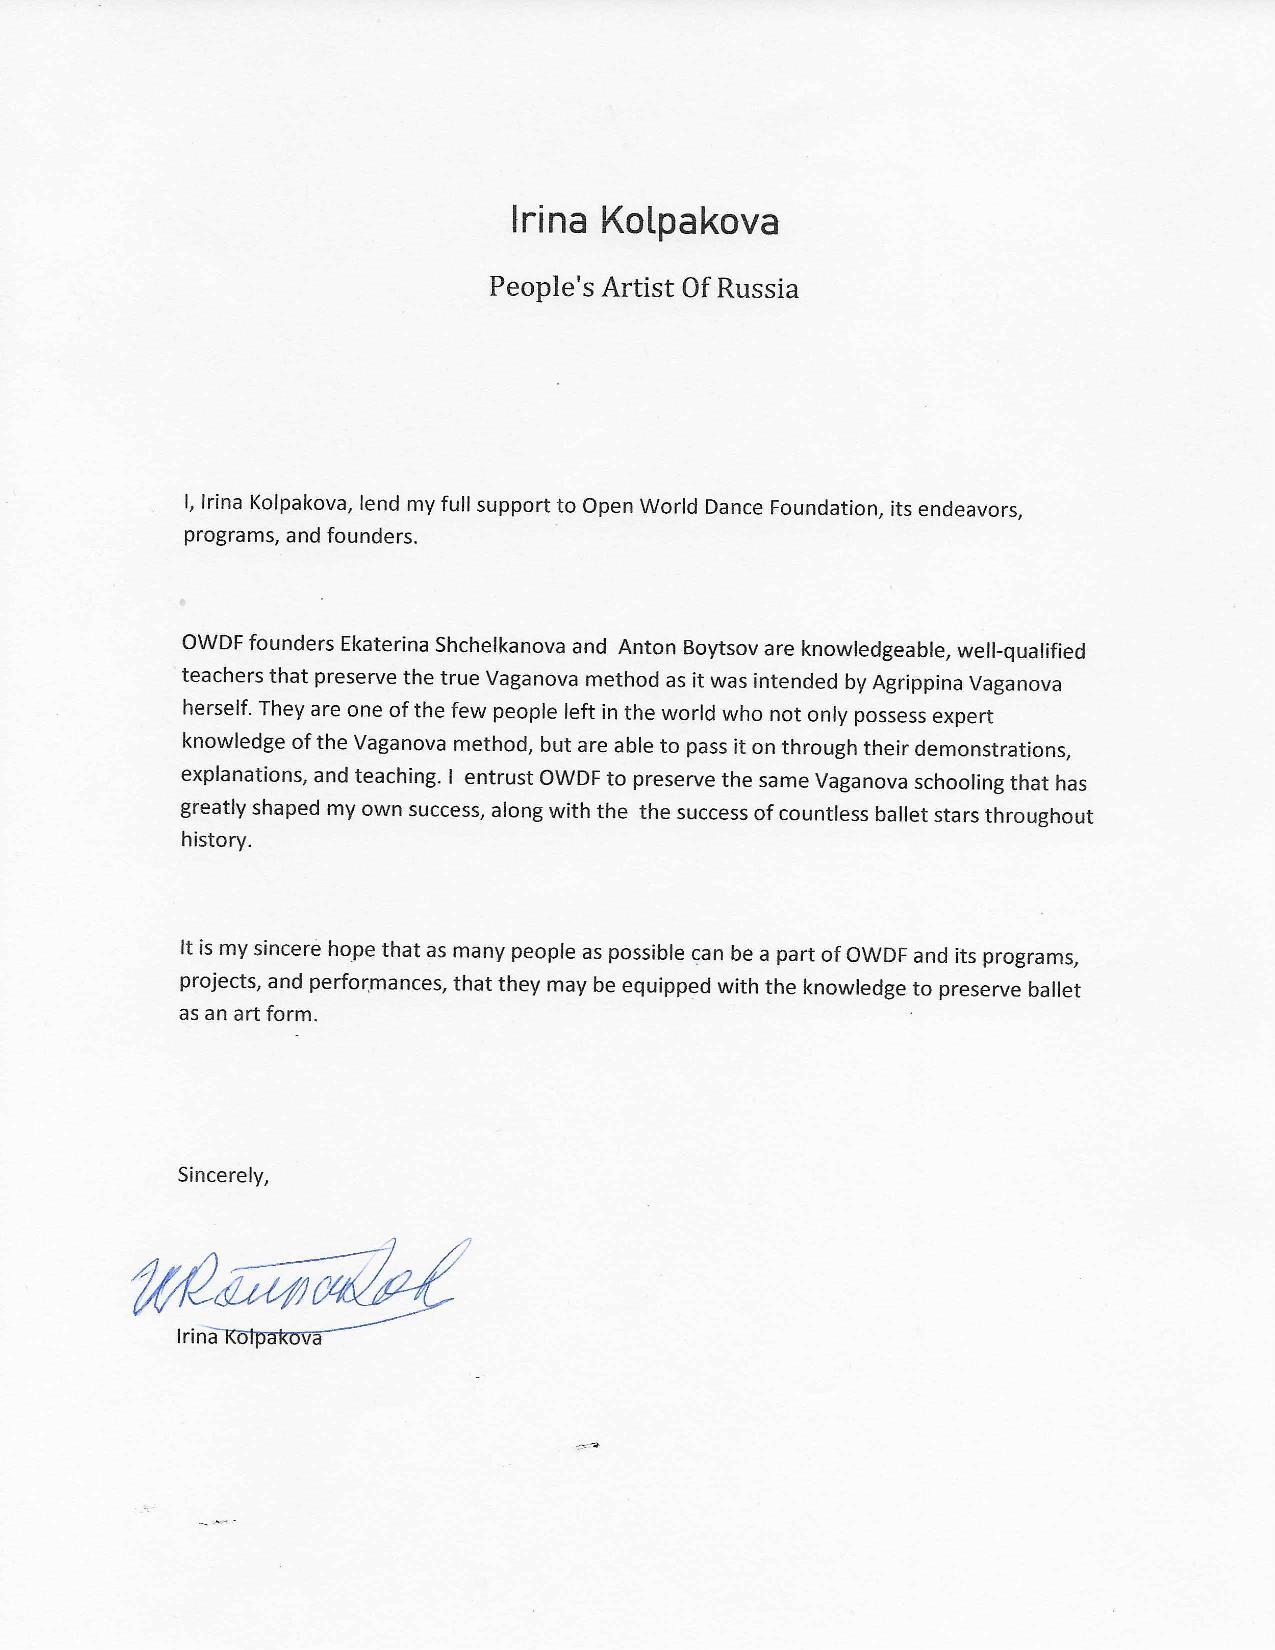 Irina Kolpakova signs Letter of Support for Open World Dance Foundation